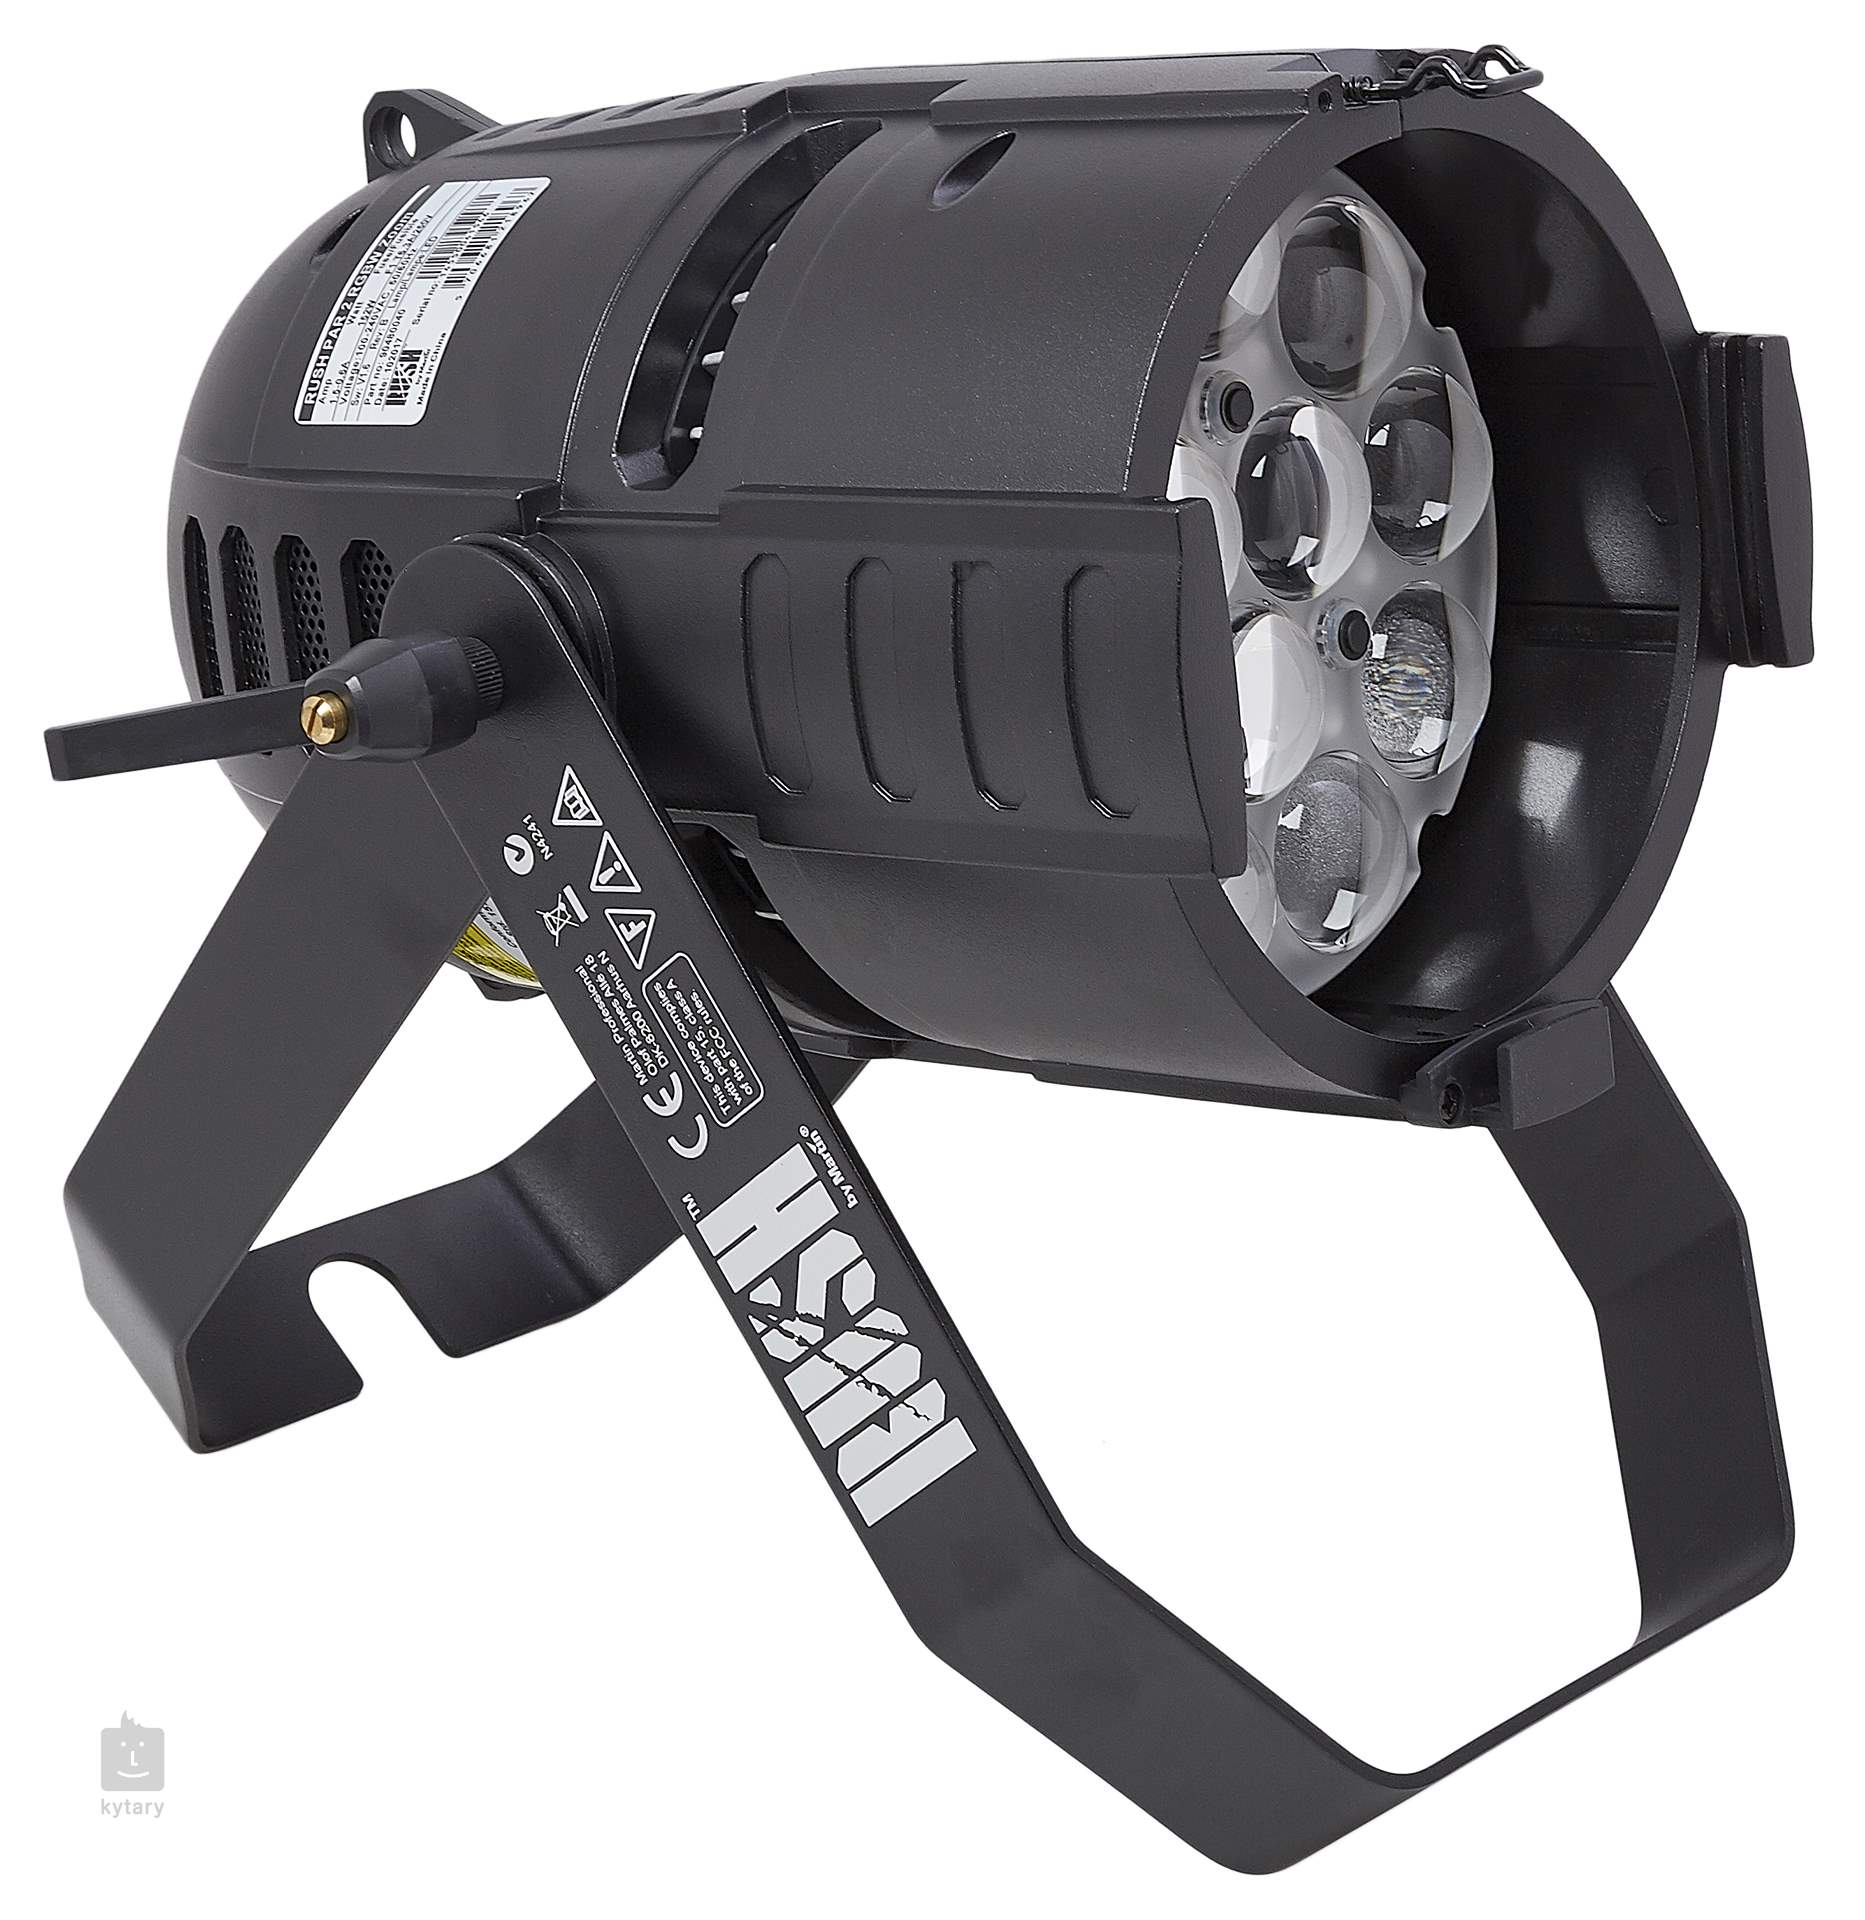 MARTIN PROFESSIONAL RUSH PAR 2 RGBW Zoom Projecteur a LED